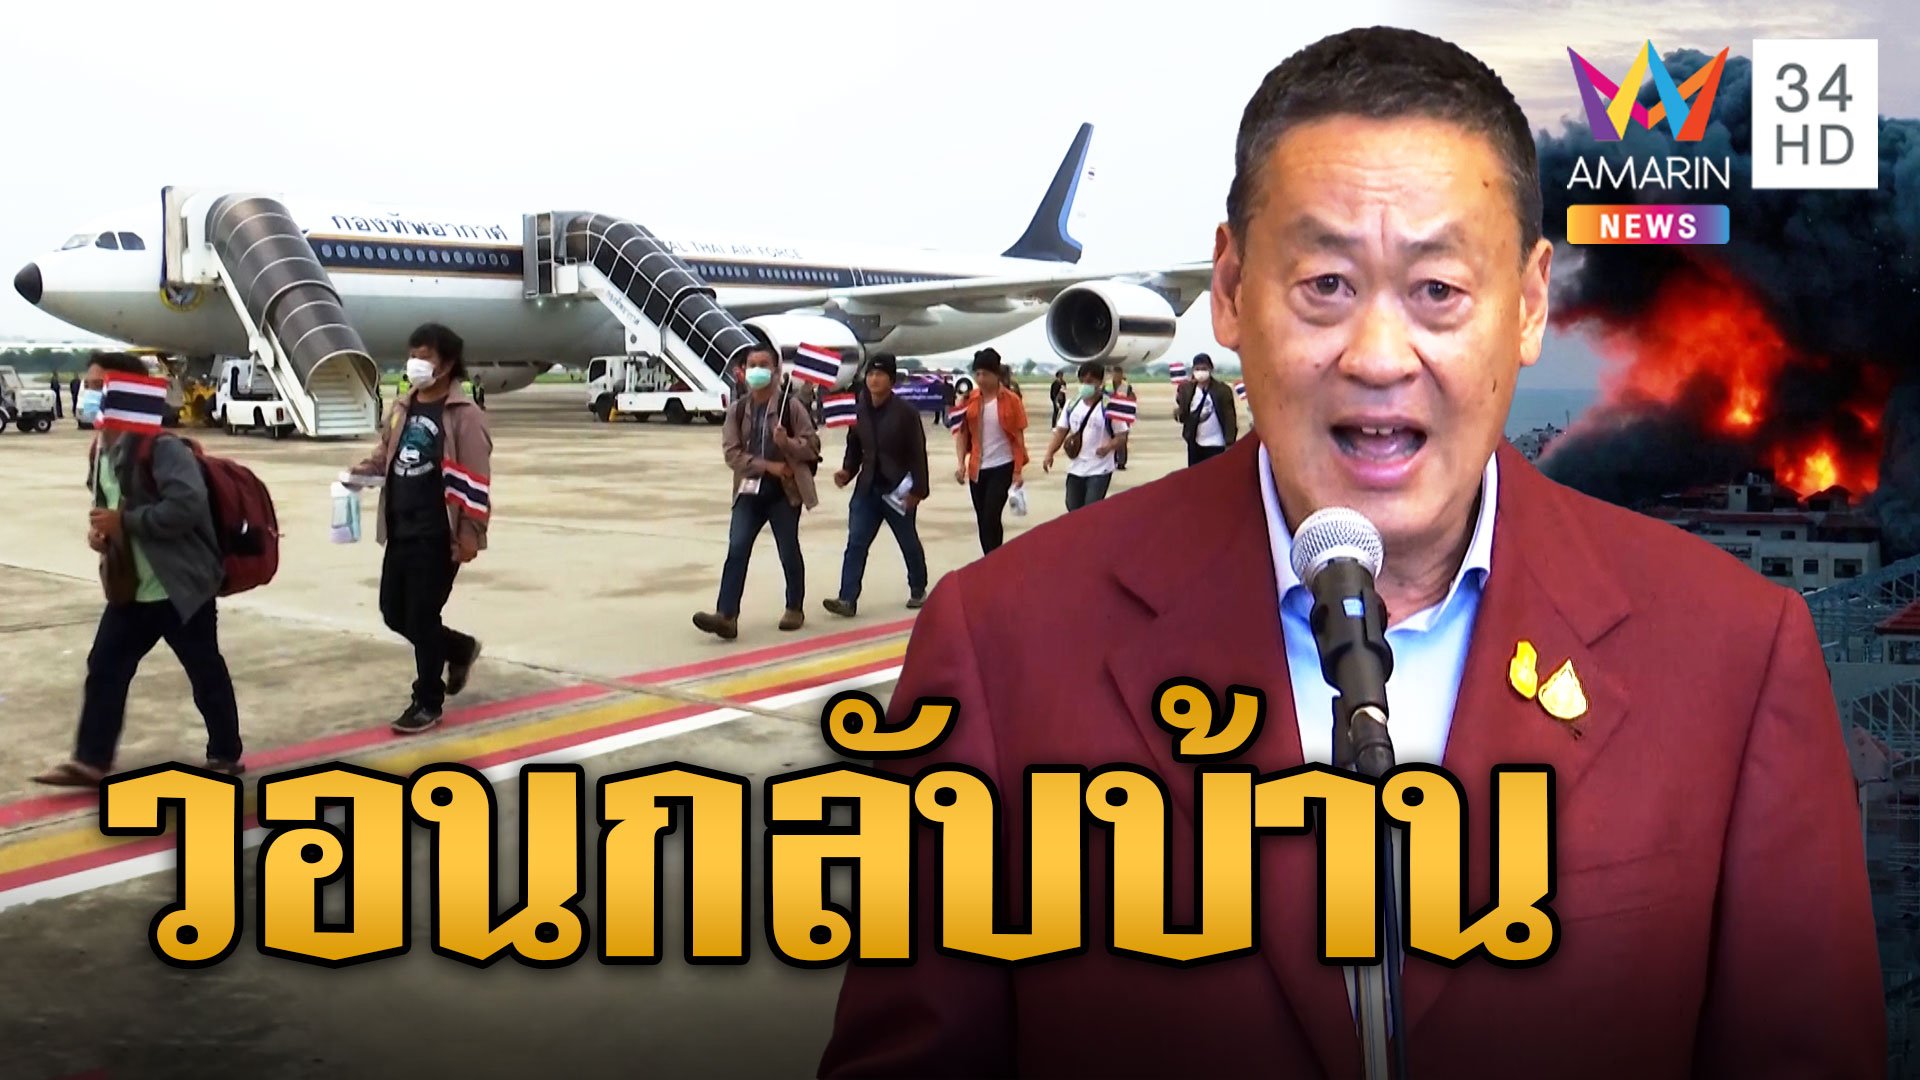 รัฐบาลวอนคนไทยกลับบ้าน ก่อนสงครามลุกลาม แรงงานเปลี่ยนใจทำคนเสียสิทธิ์ | ข่าวอรุณอมรินทร์ | 24 ต.ค. 66 | AMARIN TVHD34